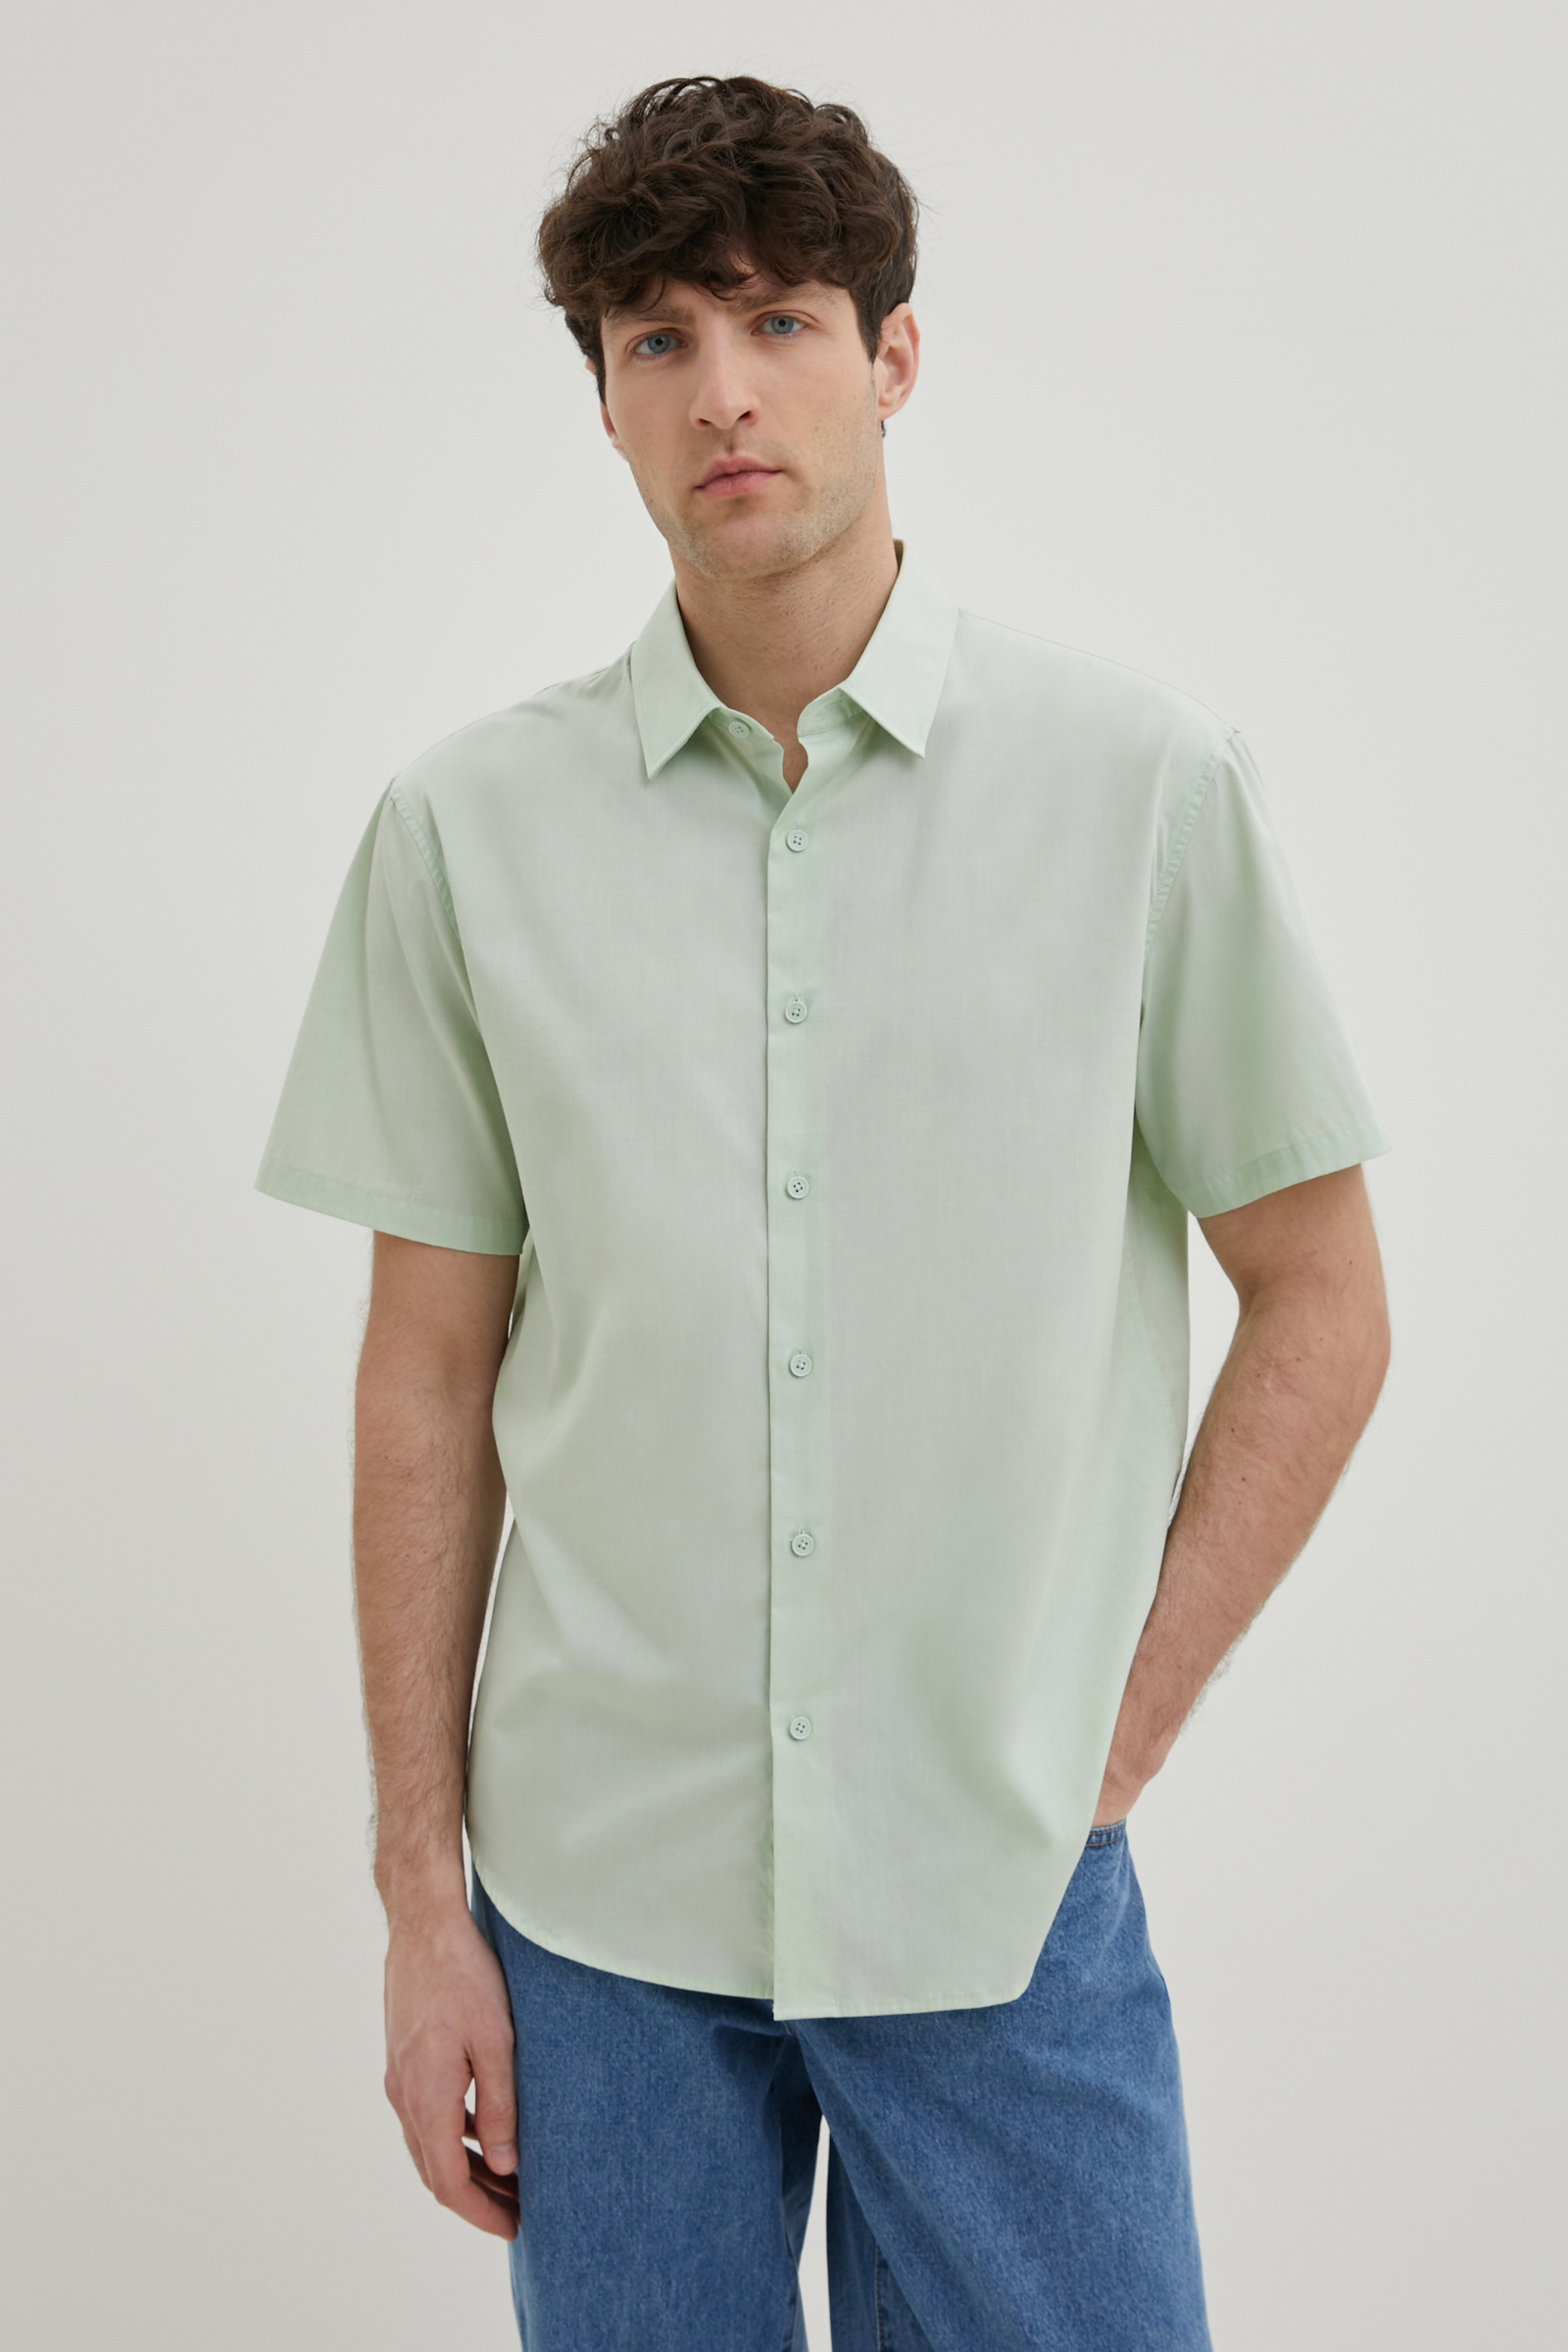 Рубашка мужская Finn Flare FBE210100 зеленая L